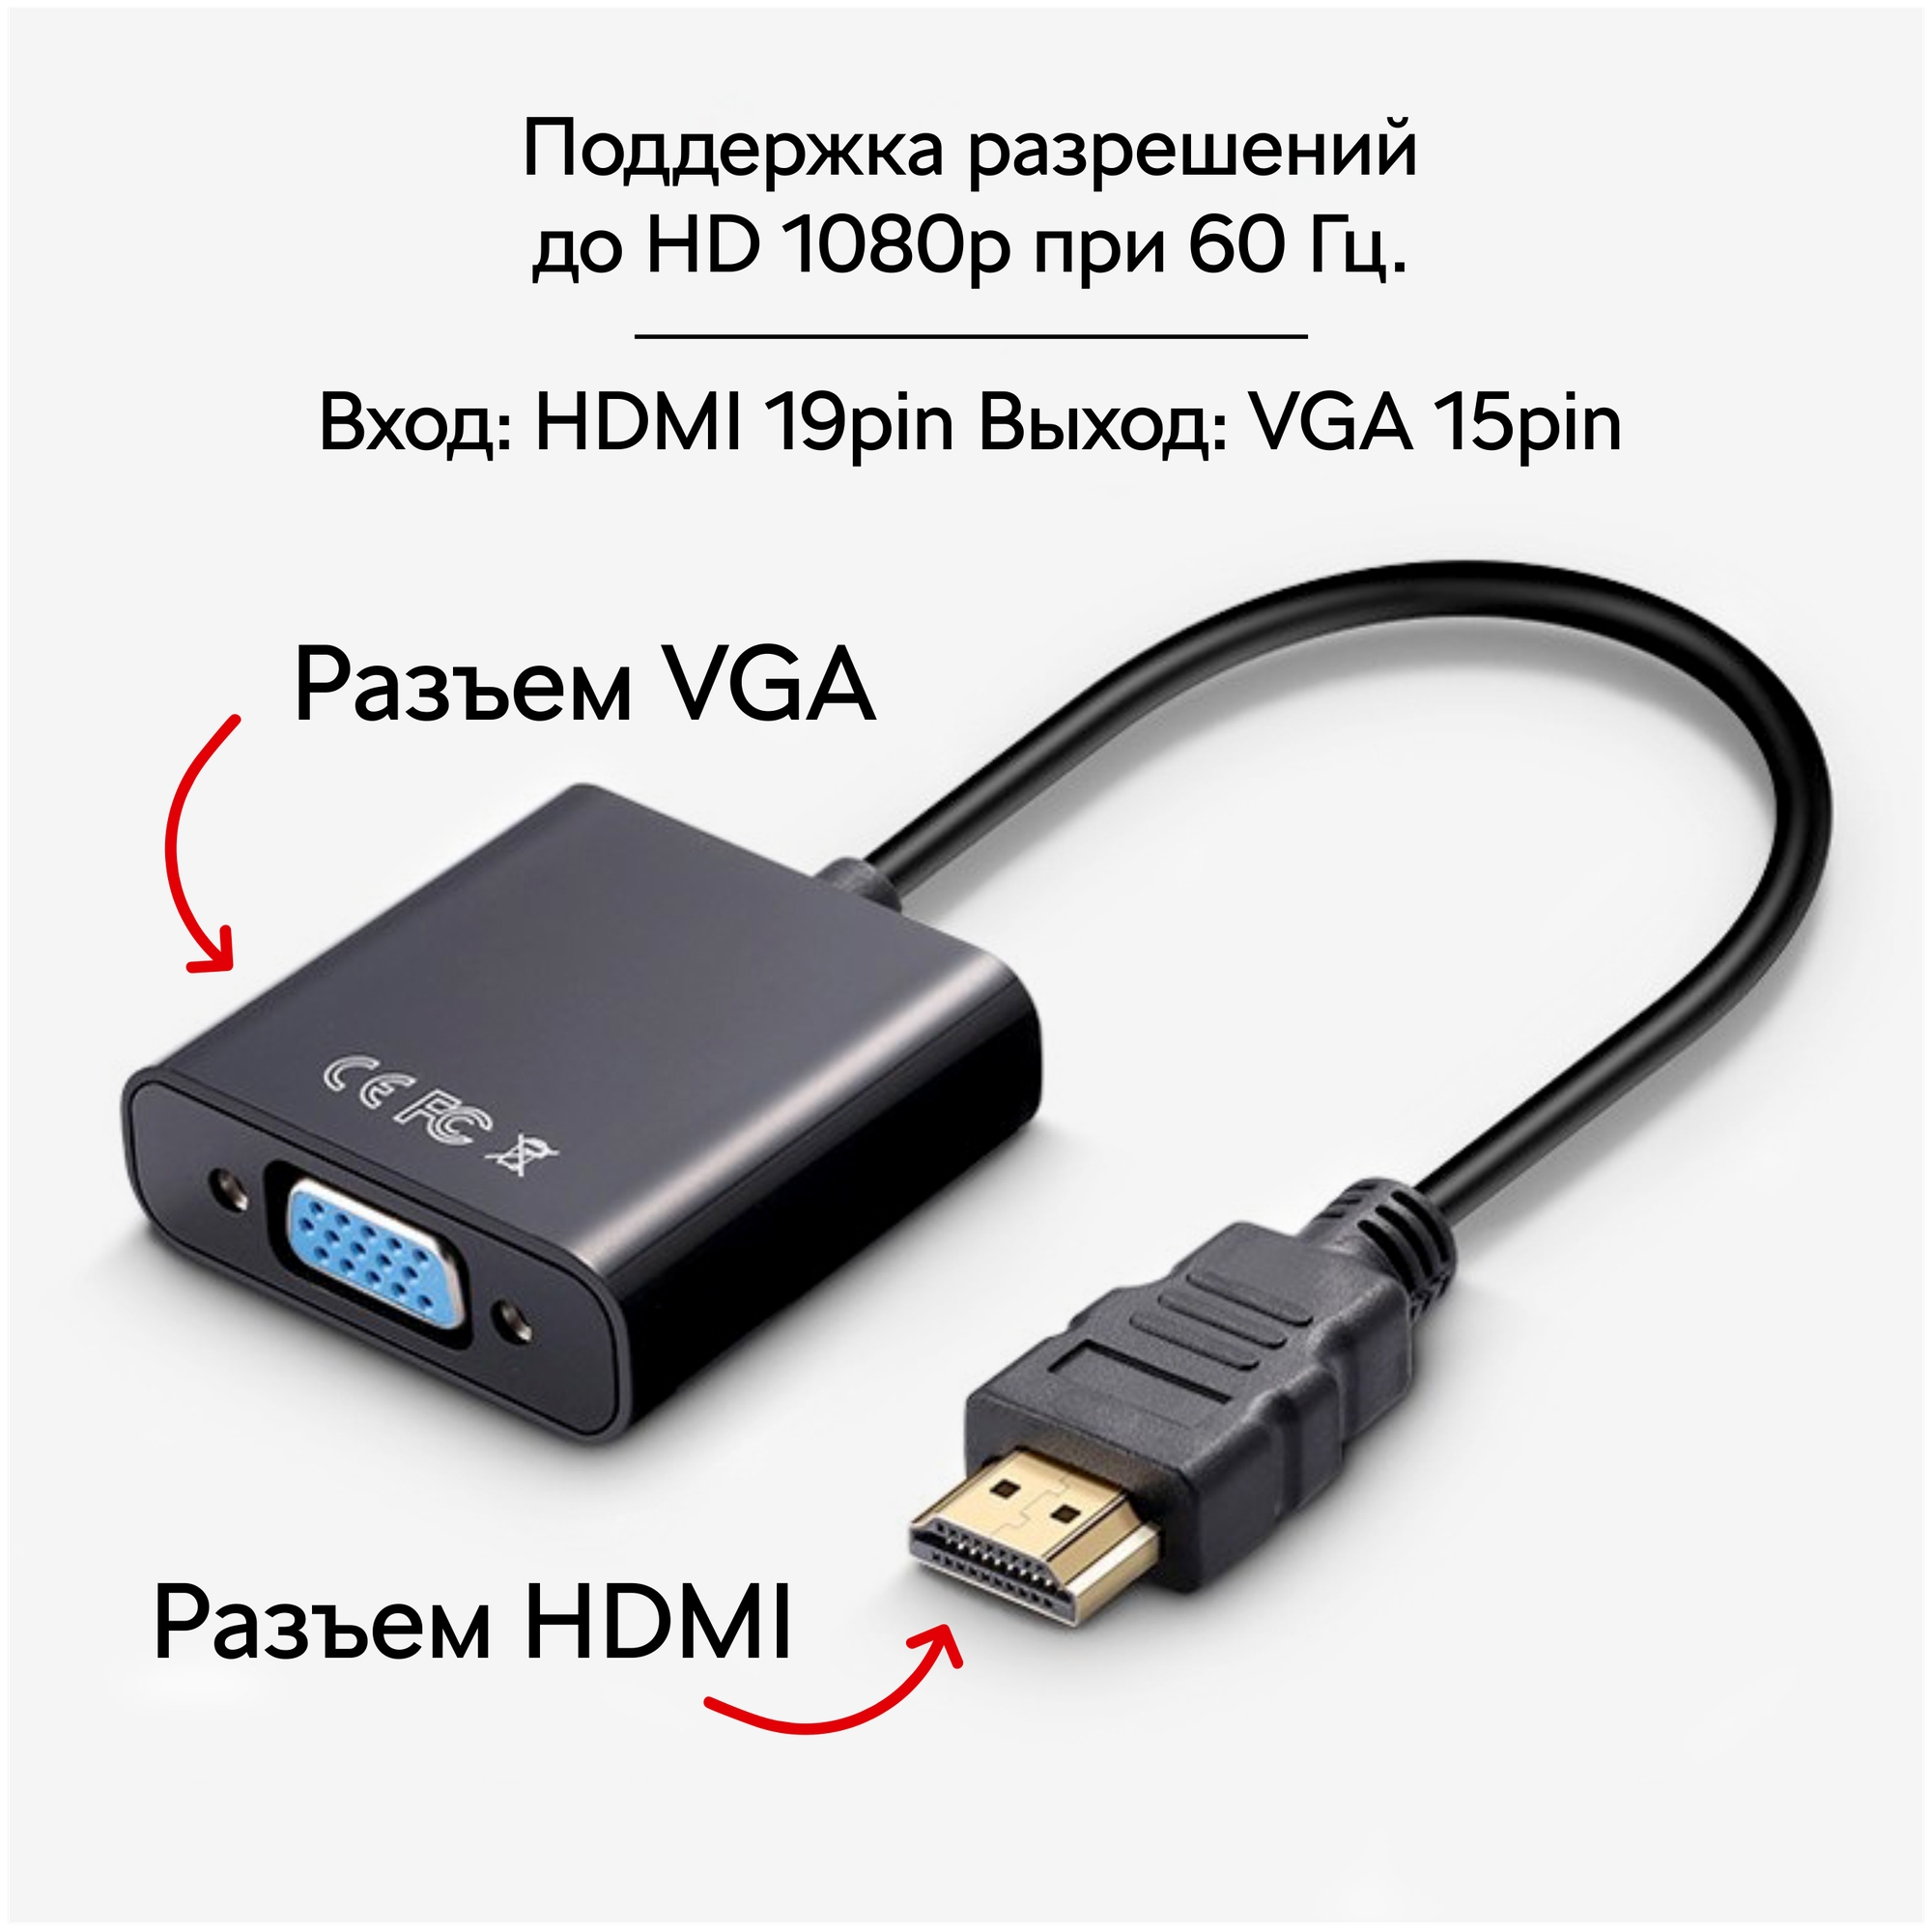 Переходник адаптер HDMI - VGA / кабель для видеокарты монитора проектора / конвертер